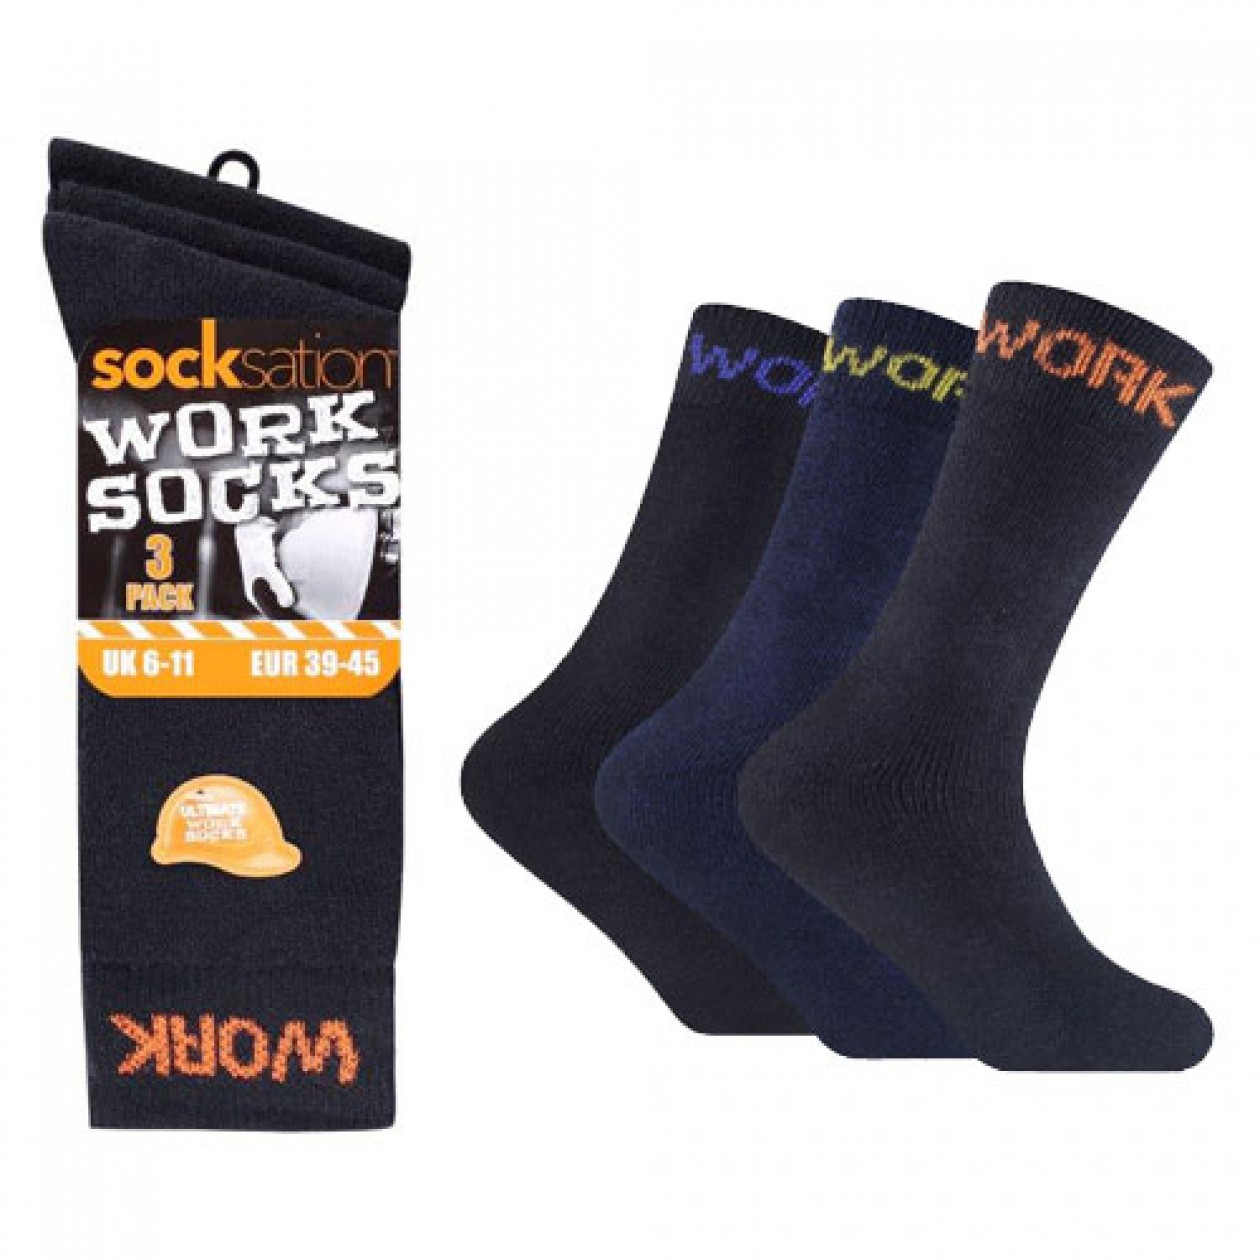 Ralph Rossini Men Socksation Work Socks Black 3 Pack